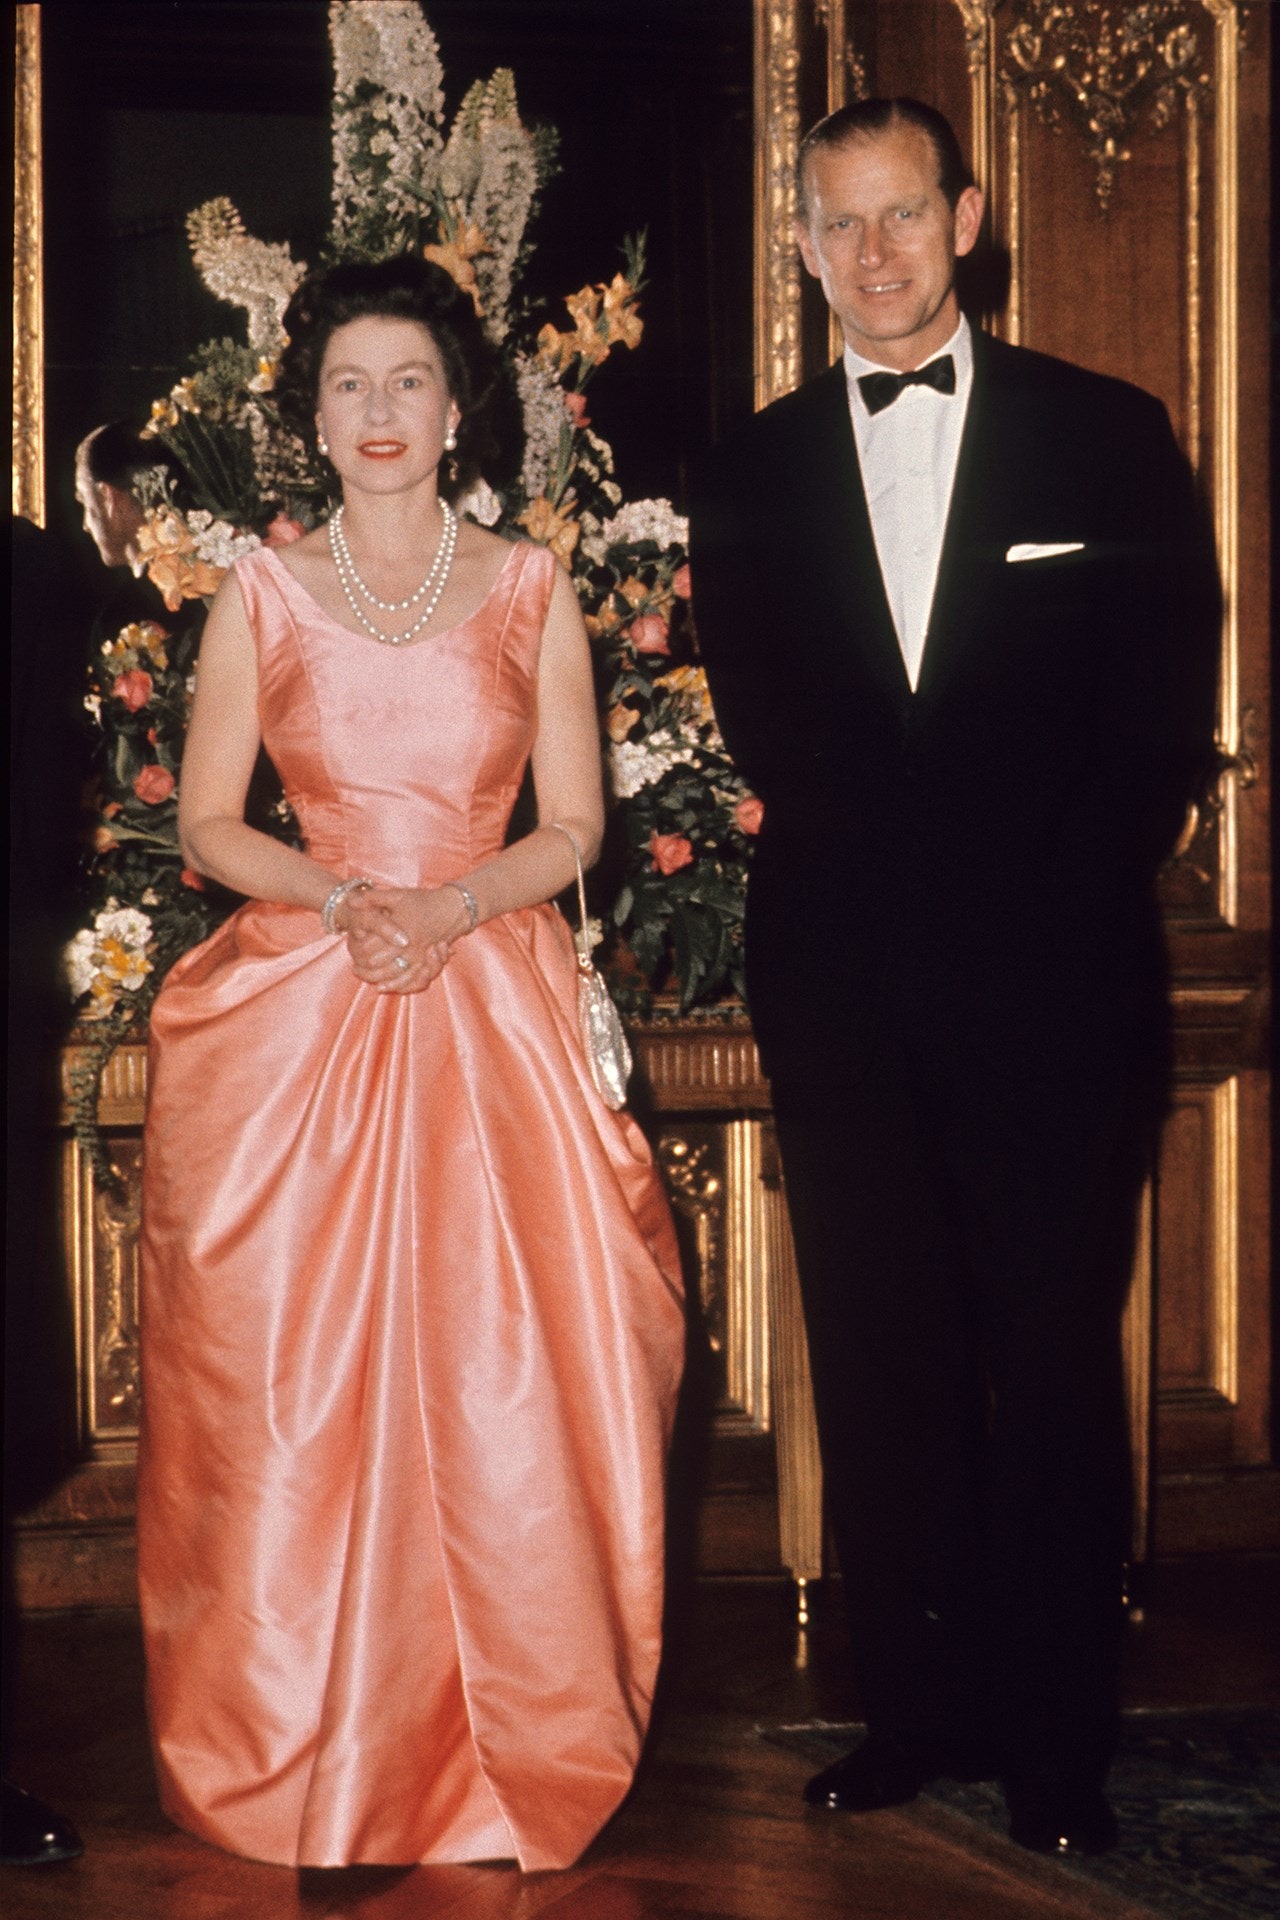 Tháng 6/1963, Nữ hoàng gây ấn tượng khi khoác lên mình chiếc váy dạ hội màu san hô kết hợp với trang sức ngọc trai sang trong khi để tham dự sự kiện ở London cùng với Công tước xứ Edinburgh.